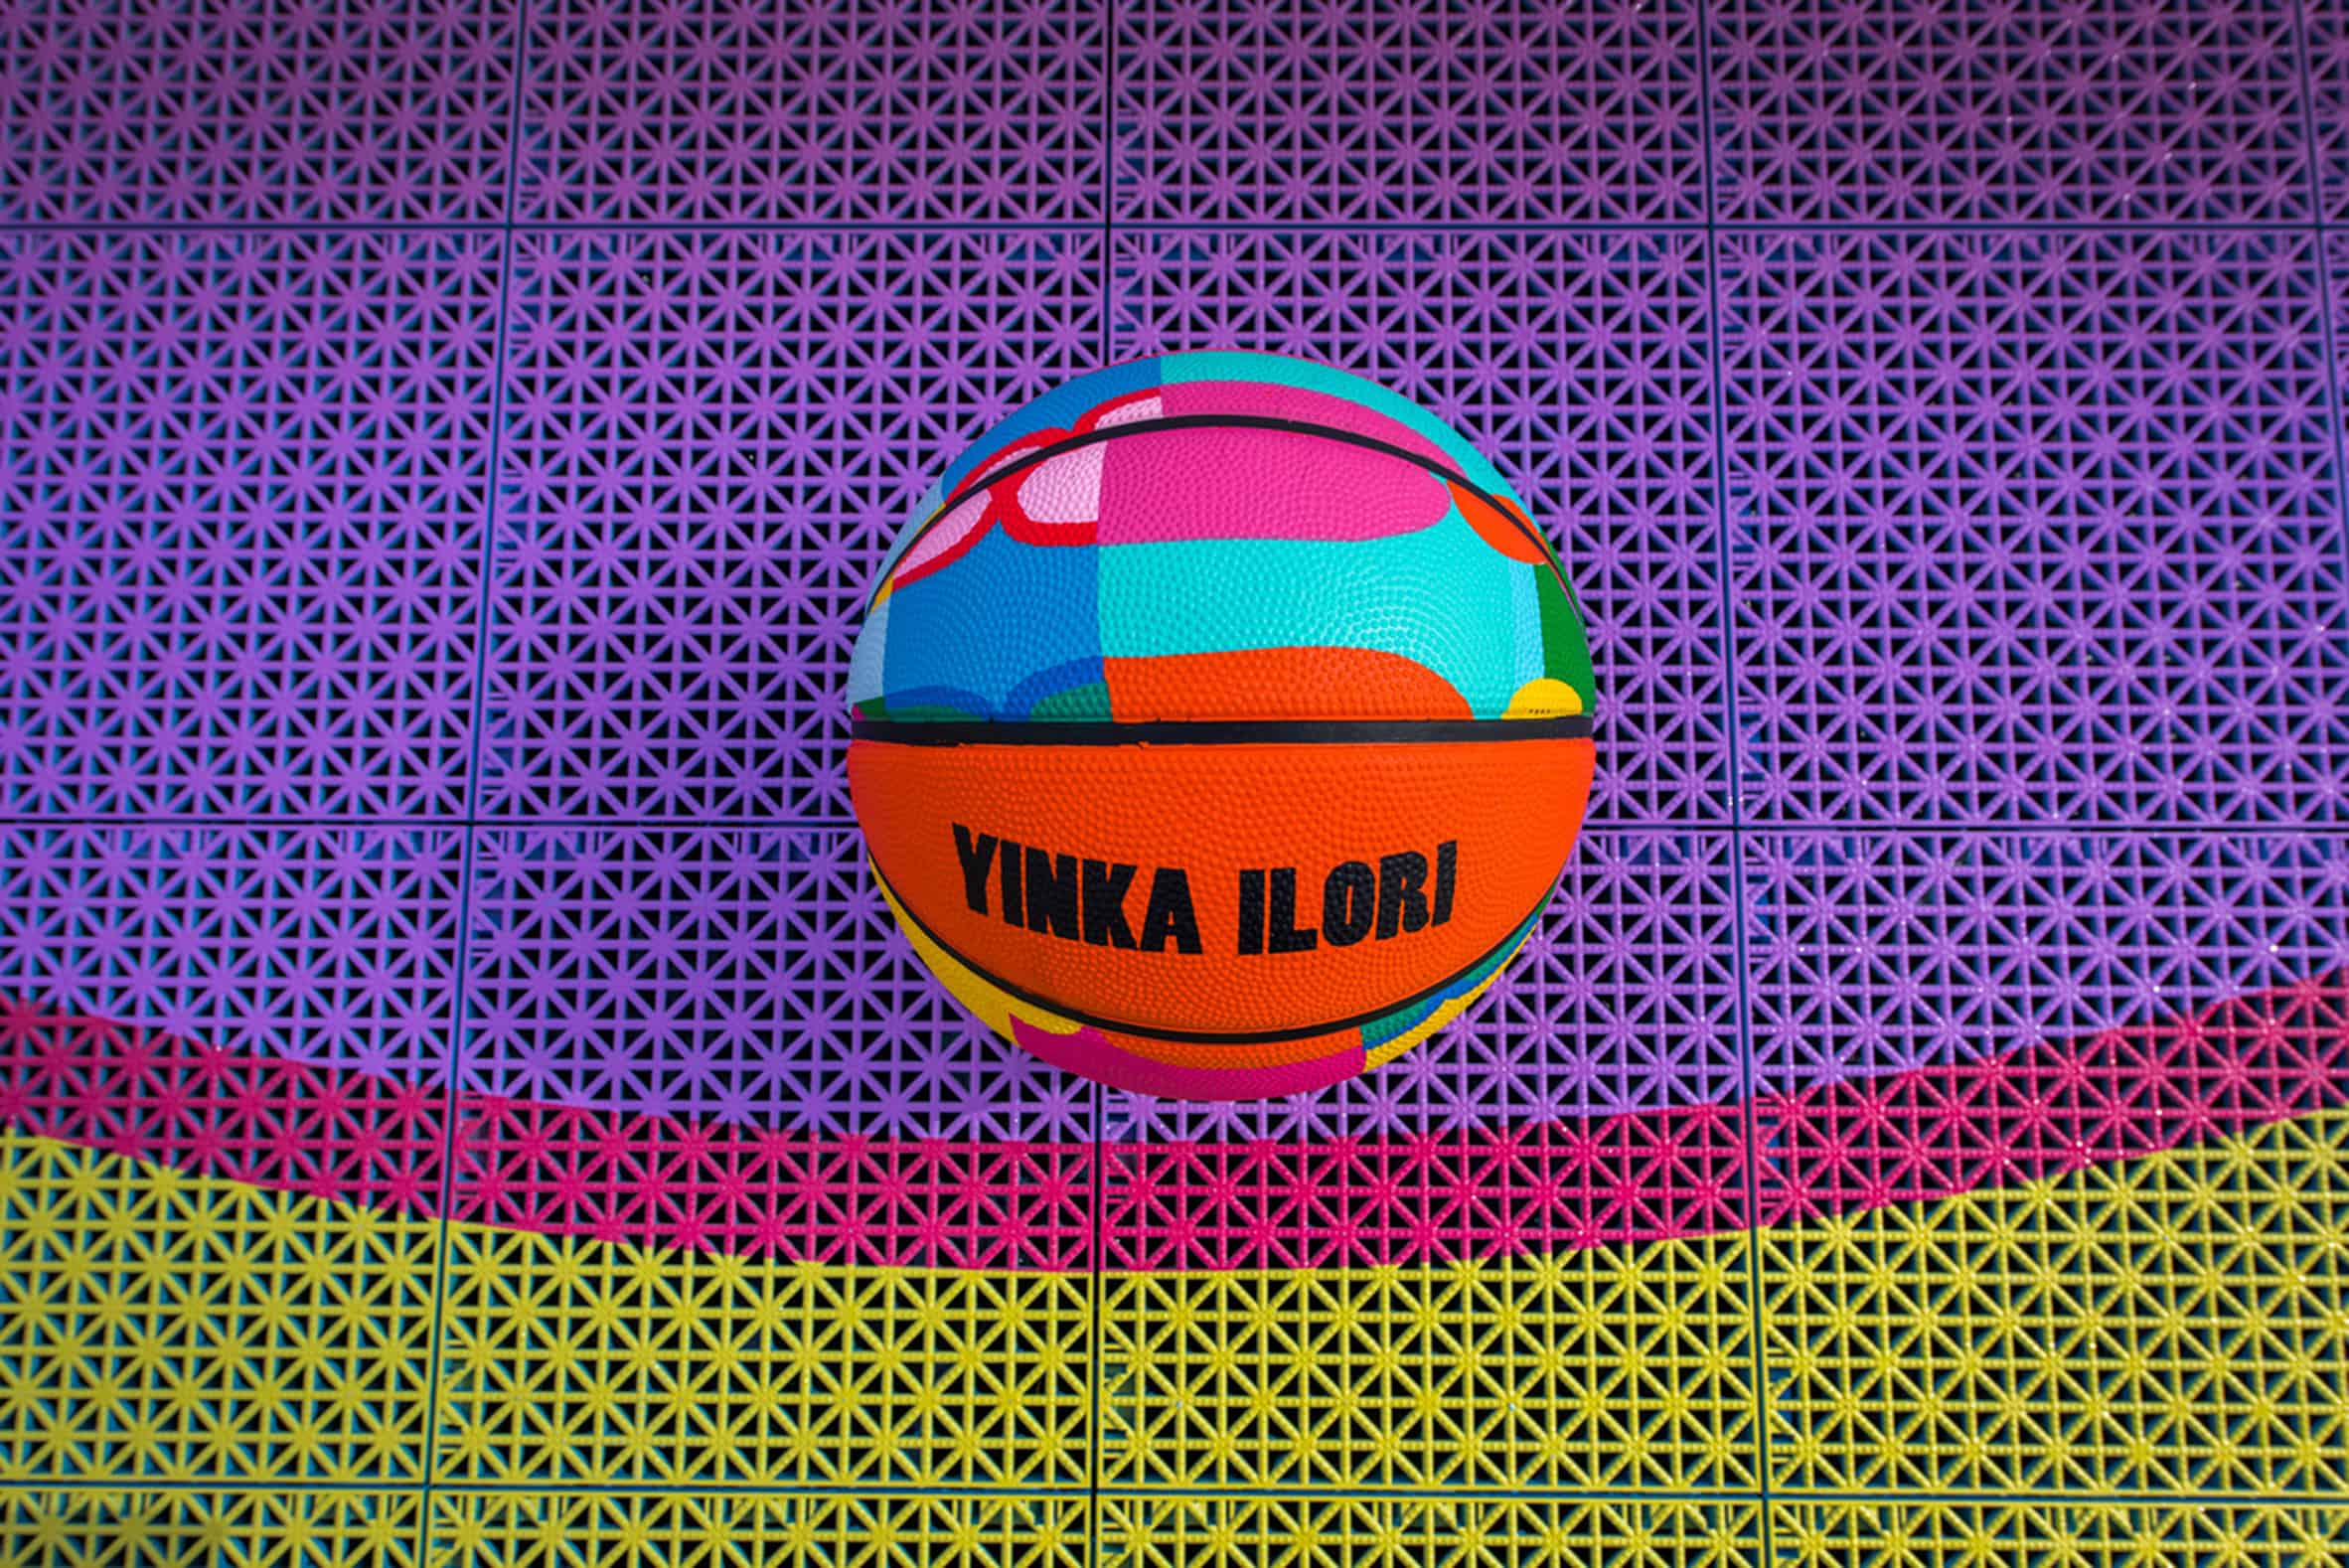 Basketbalveld uit de 3D-printer